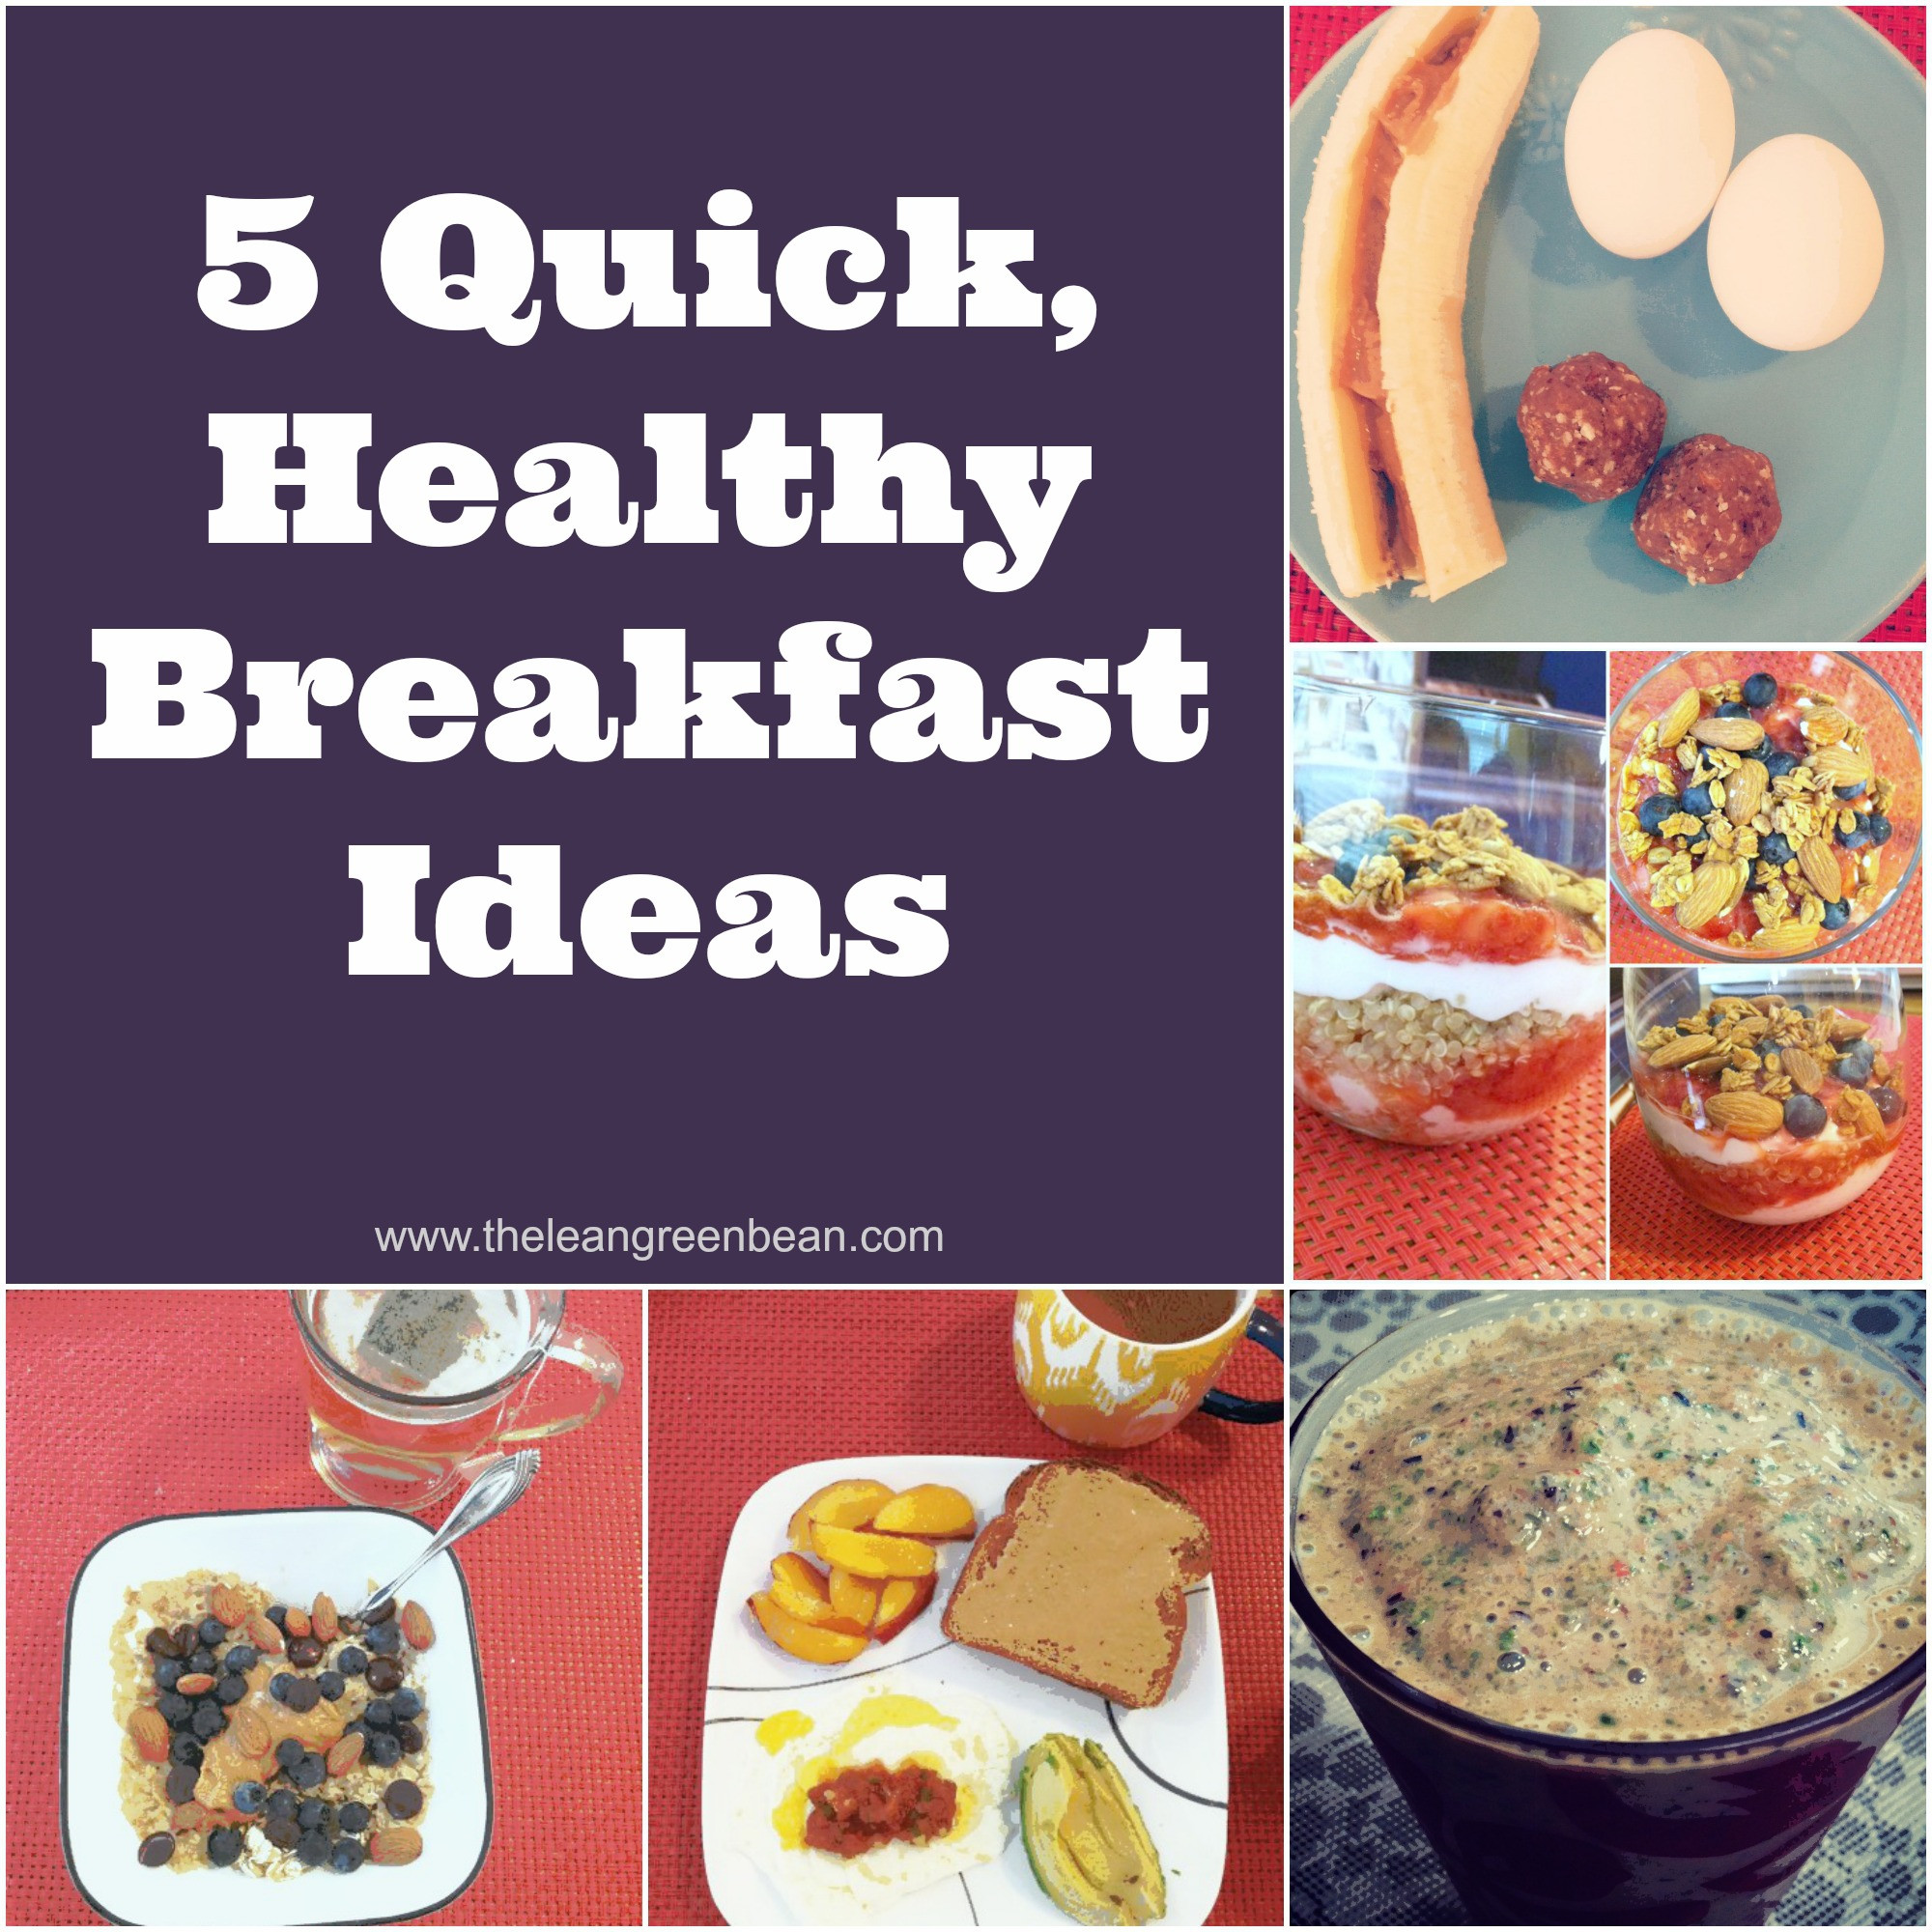 Easy Healthy Breakfast Idea
 5 Quick Healthy Breakfast Ideas from a Registered Dietitian